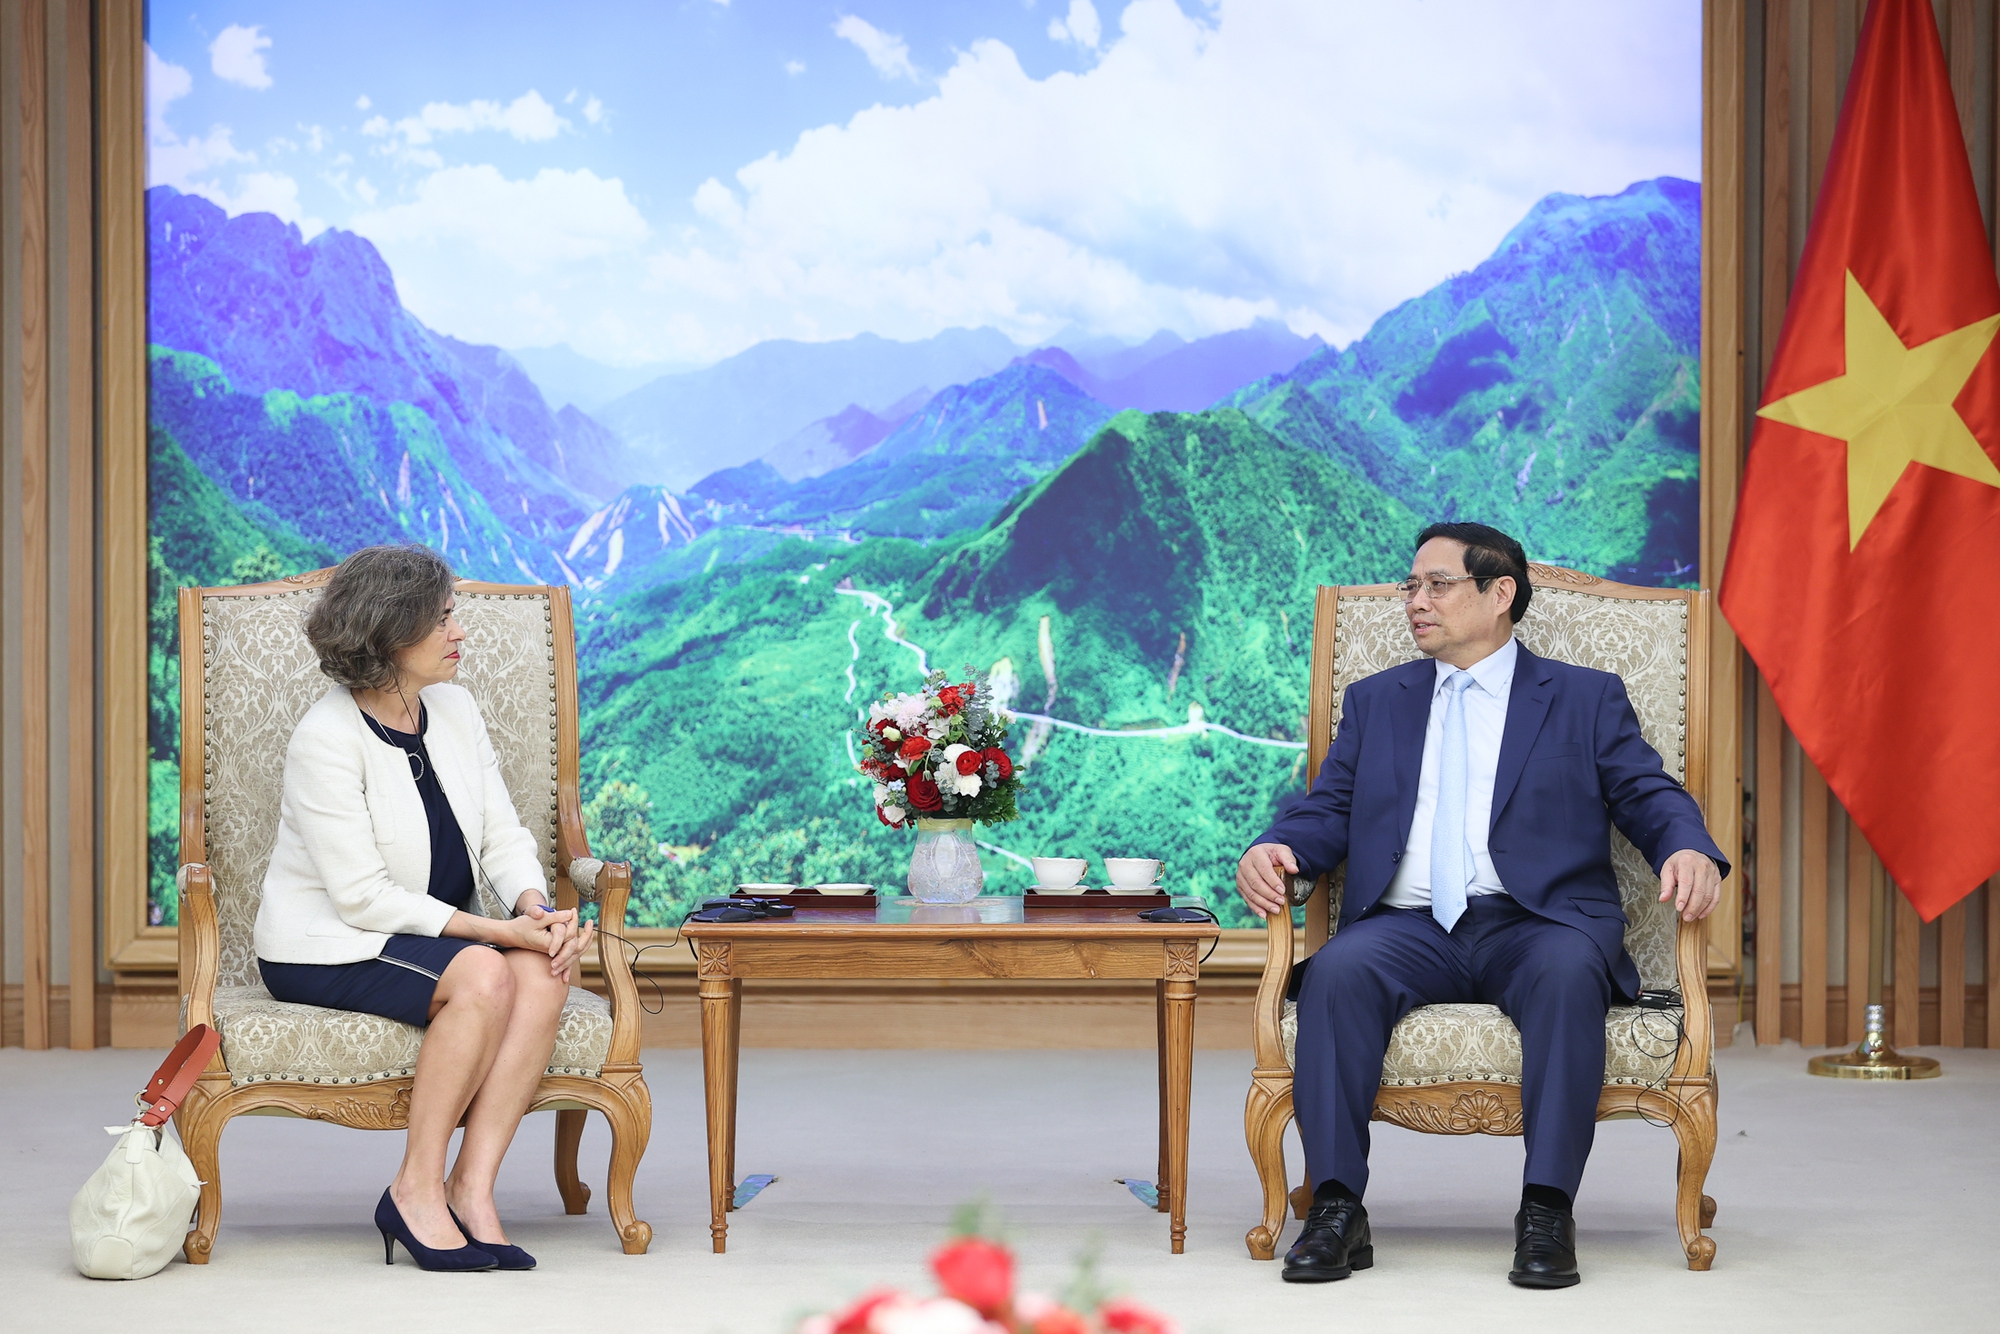 Thủ tướng hoan nghênh Tây Ban Nha đã khai trương Phòng Thương mại tại Việt Nam trong năm 2023 - Ảnh: VGP/Nhật Bắc